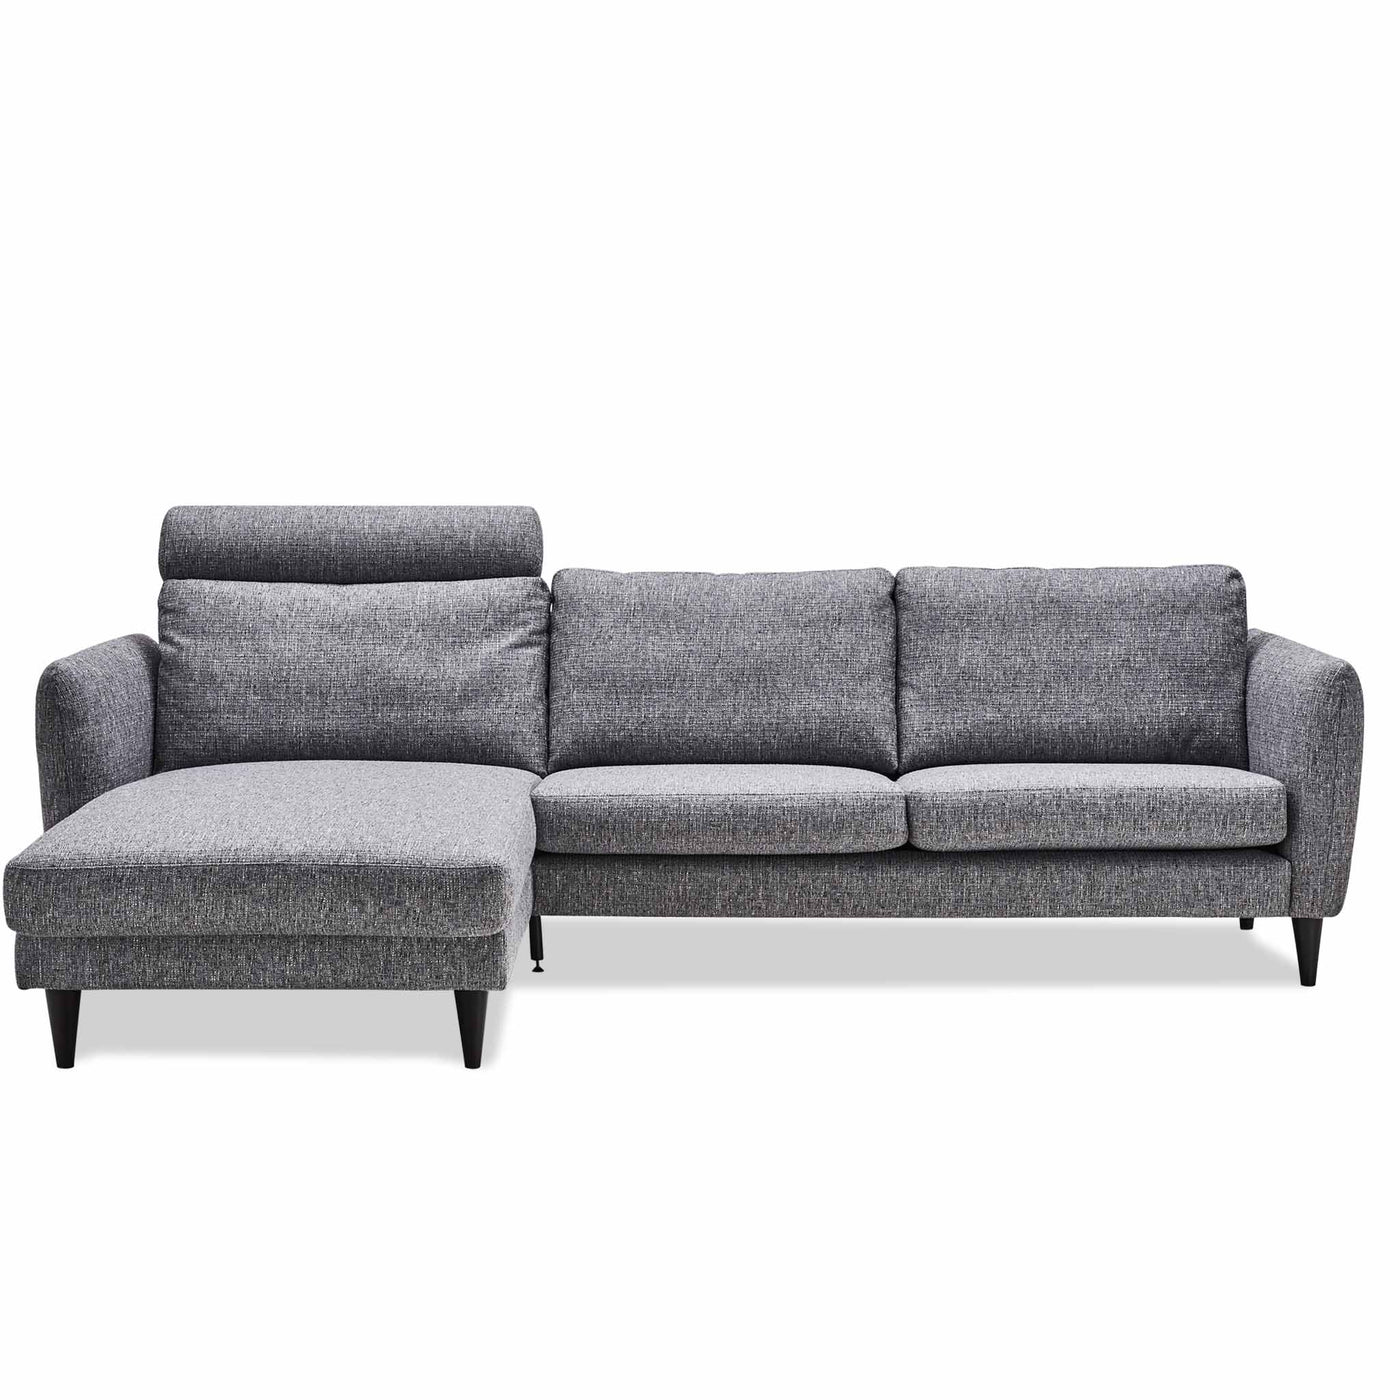 Skyline chaiselong sofa i gråblå stof fra Hjort Knudsen